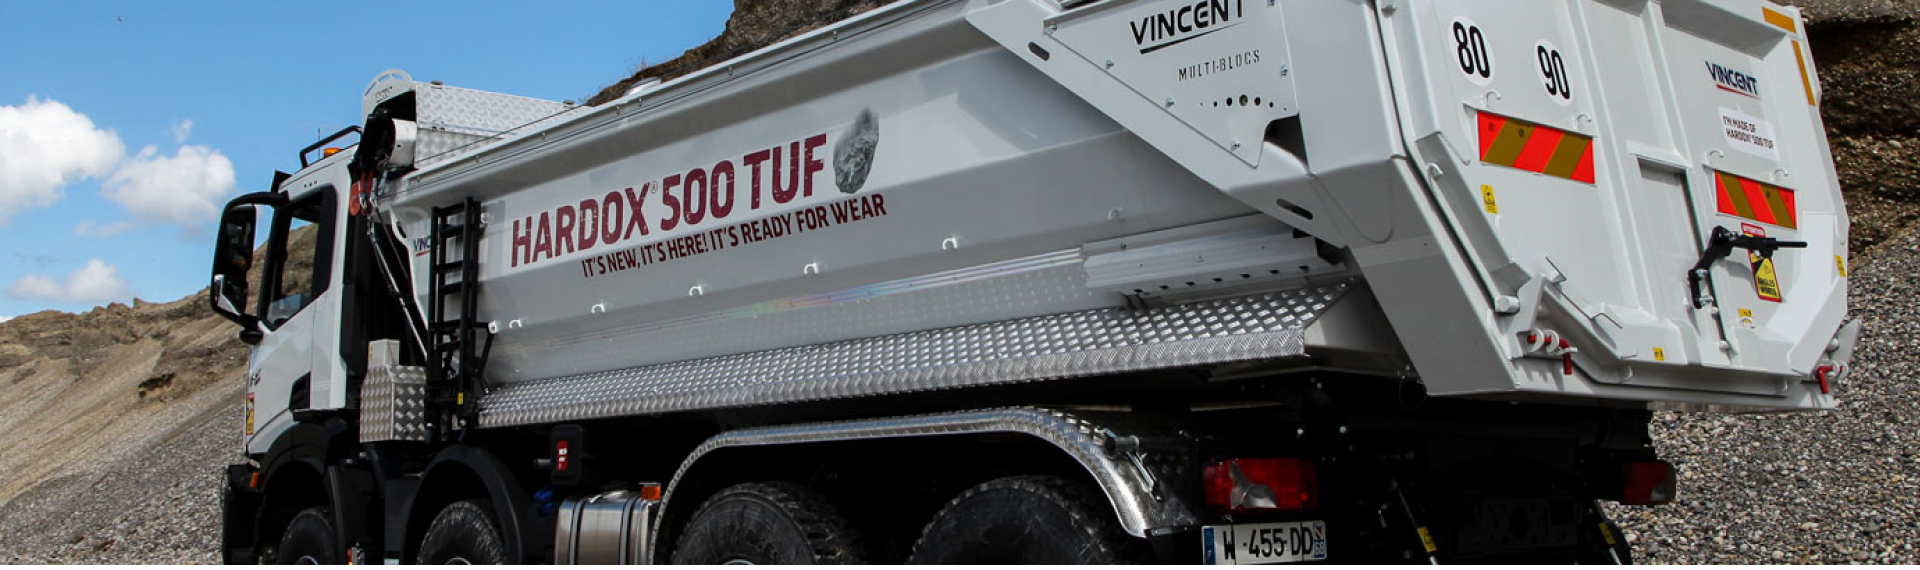 Volquete en una obra con una carrocería fabricada con el acero Hardox® 500 Tuf en la que se muestra el eslogan "It's New, It's Here, It's Ready For Wear!"  